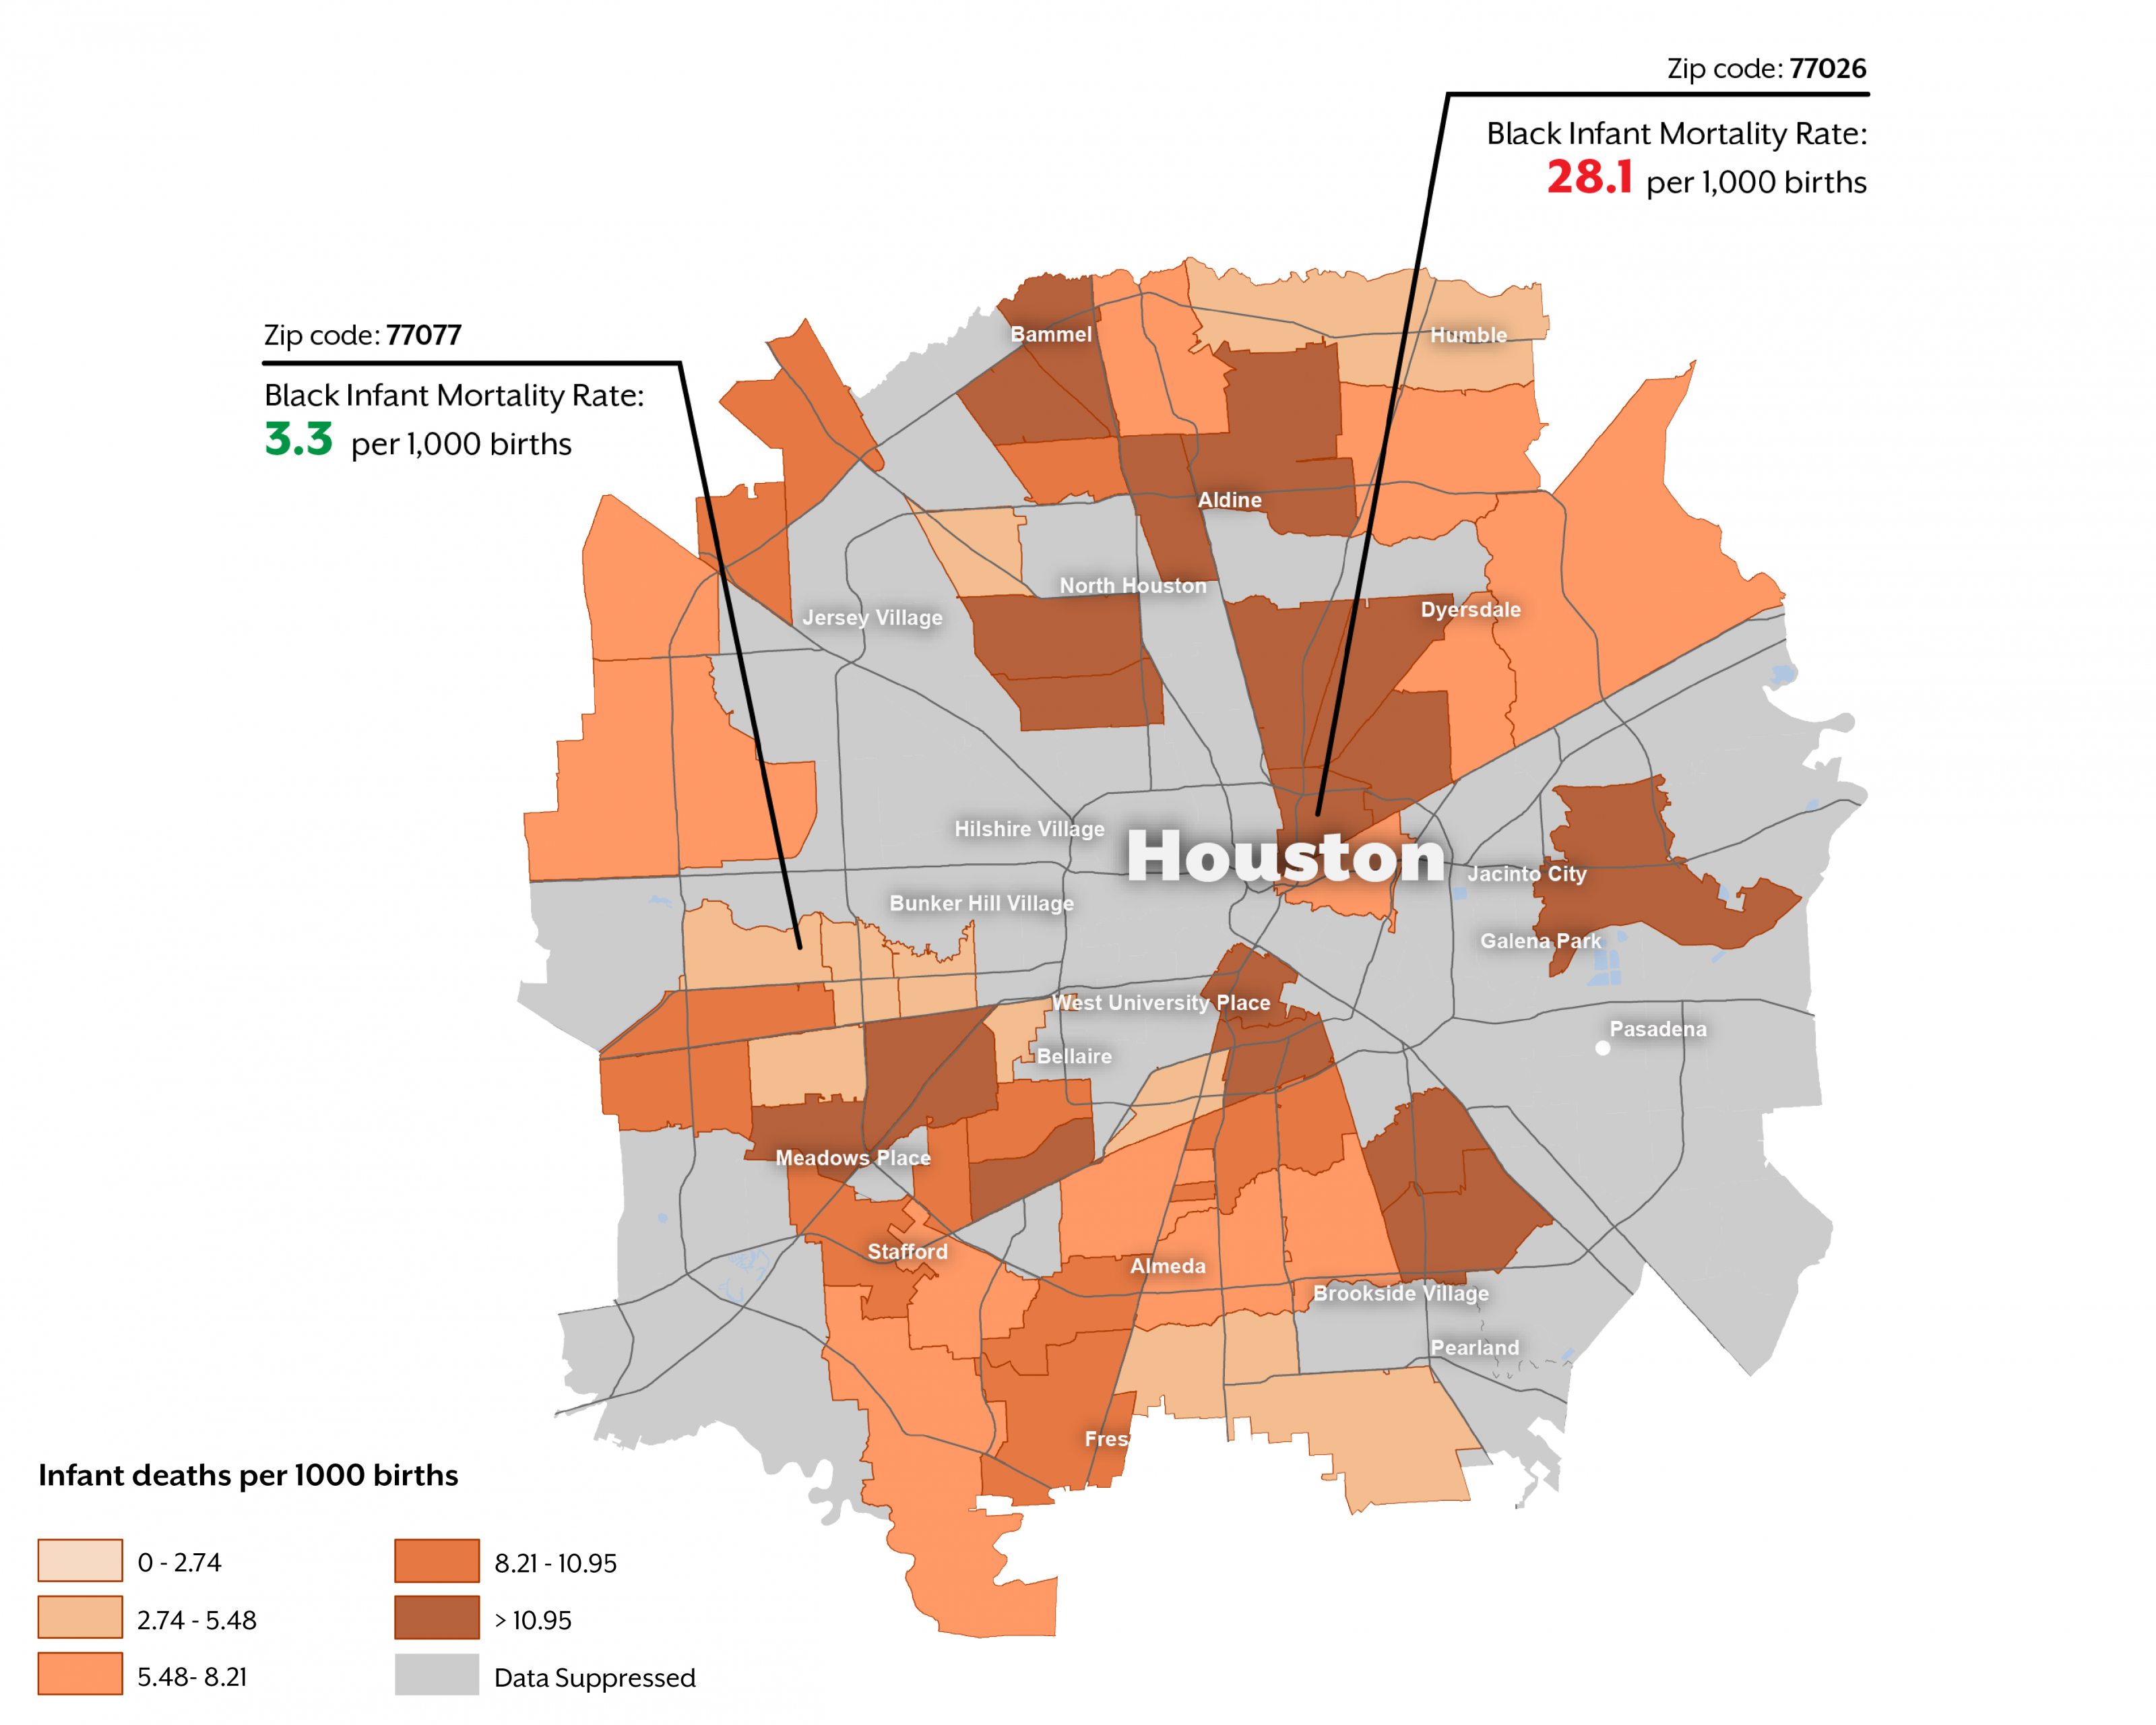 IMR Rates in Houston